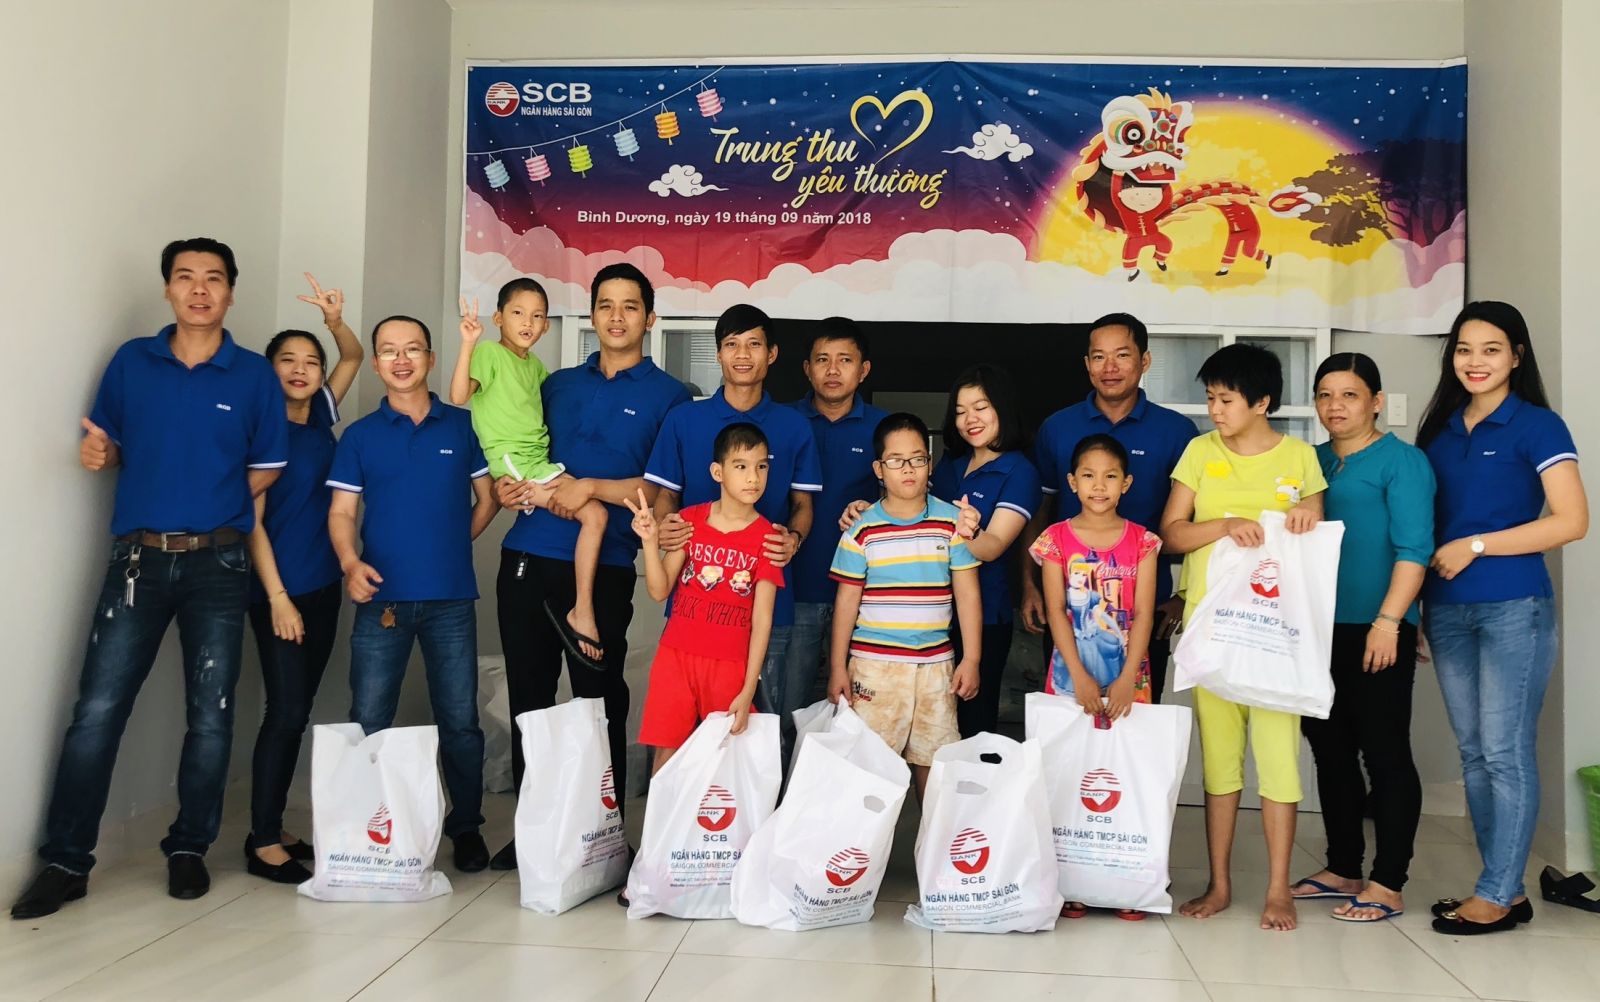 CBNV SCB Bình Dương trao gần 100 phần quà cho các em nhỏ tại Trung tâm bảo trợ xã hội tỉnh Bình Dương.